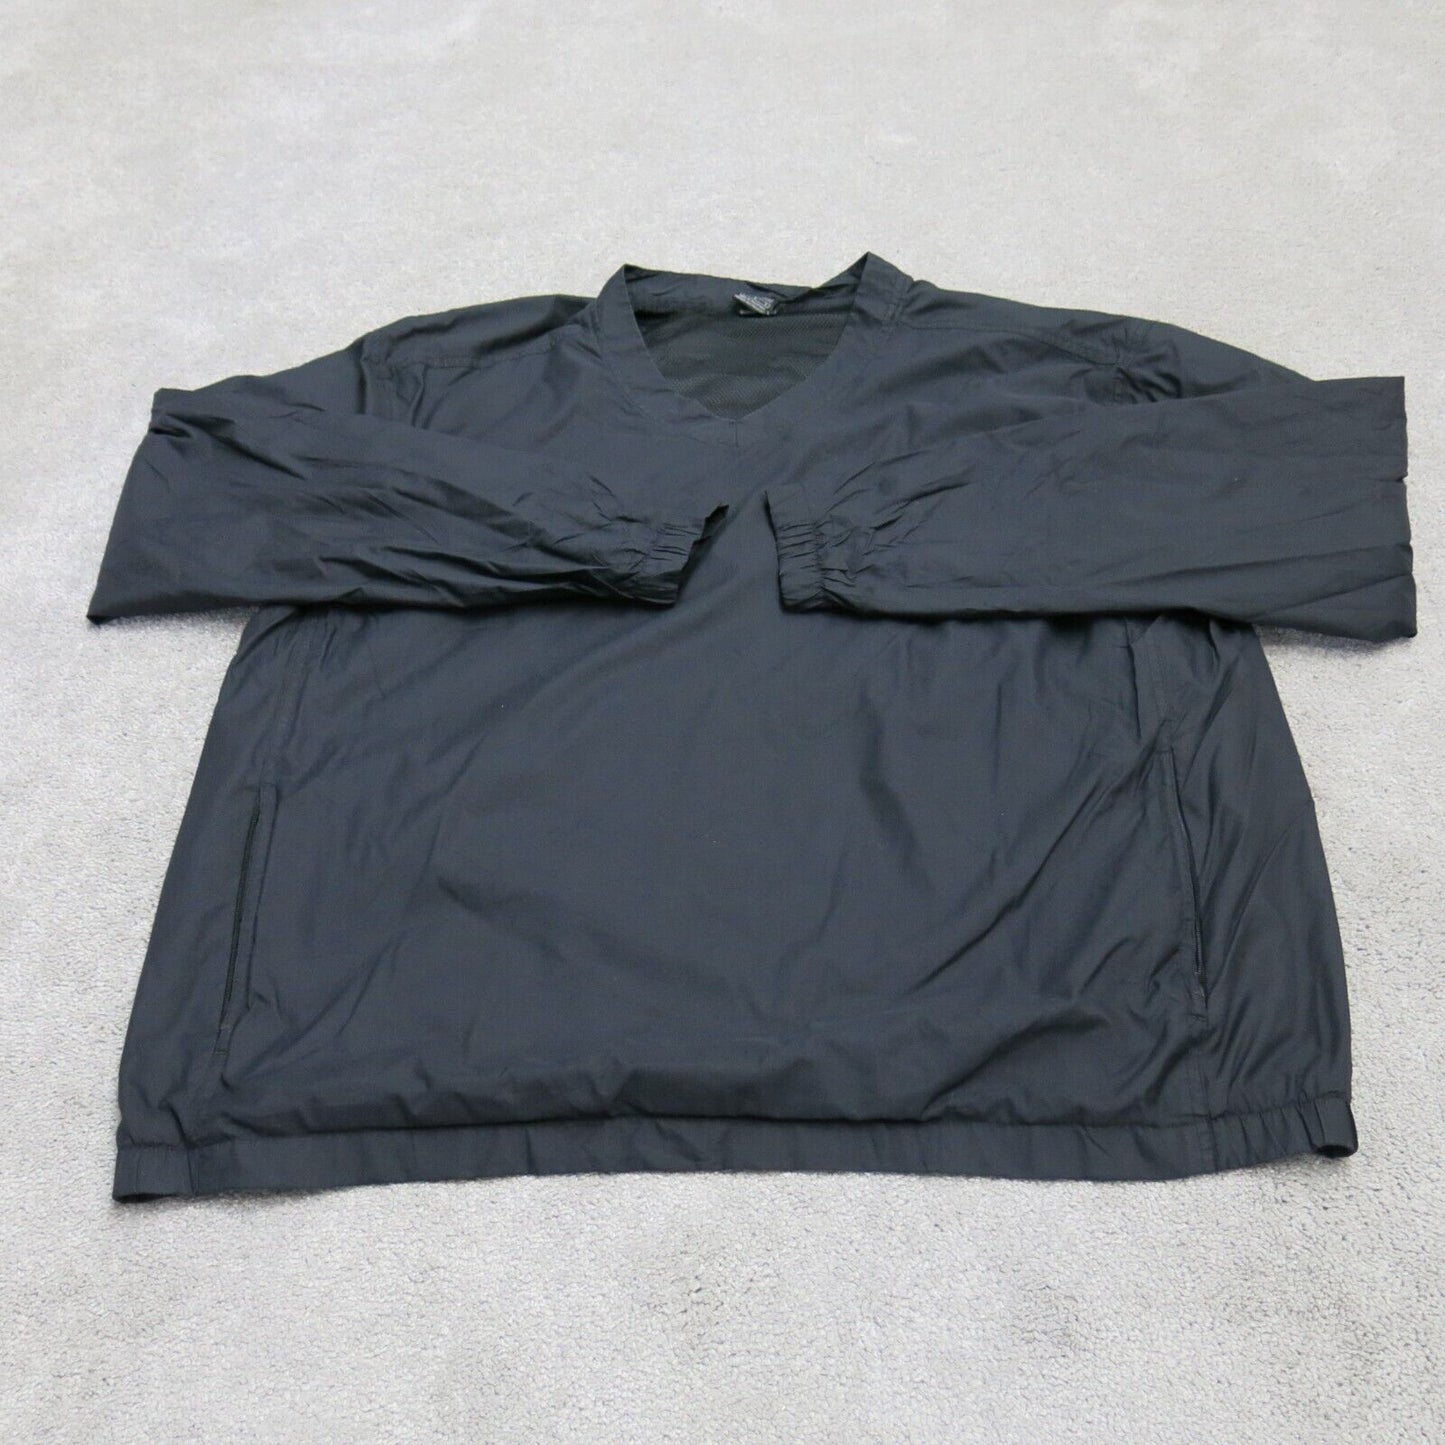 Nike Team Mens Pullover Jacket V Neck Long Sleeves 2 Pockets Black Size Large